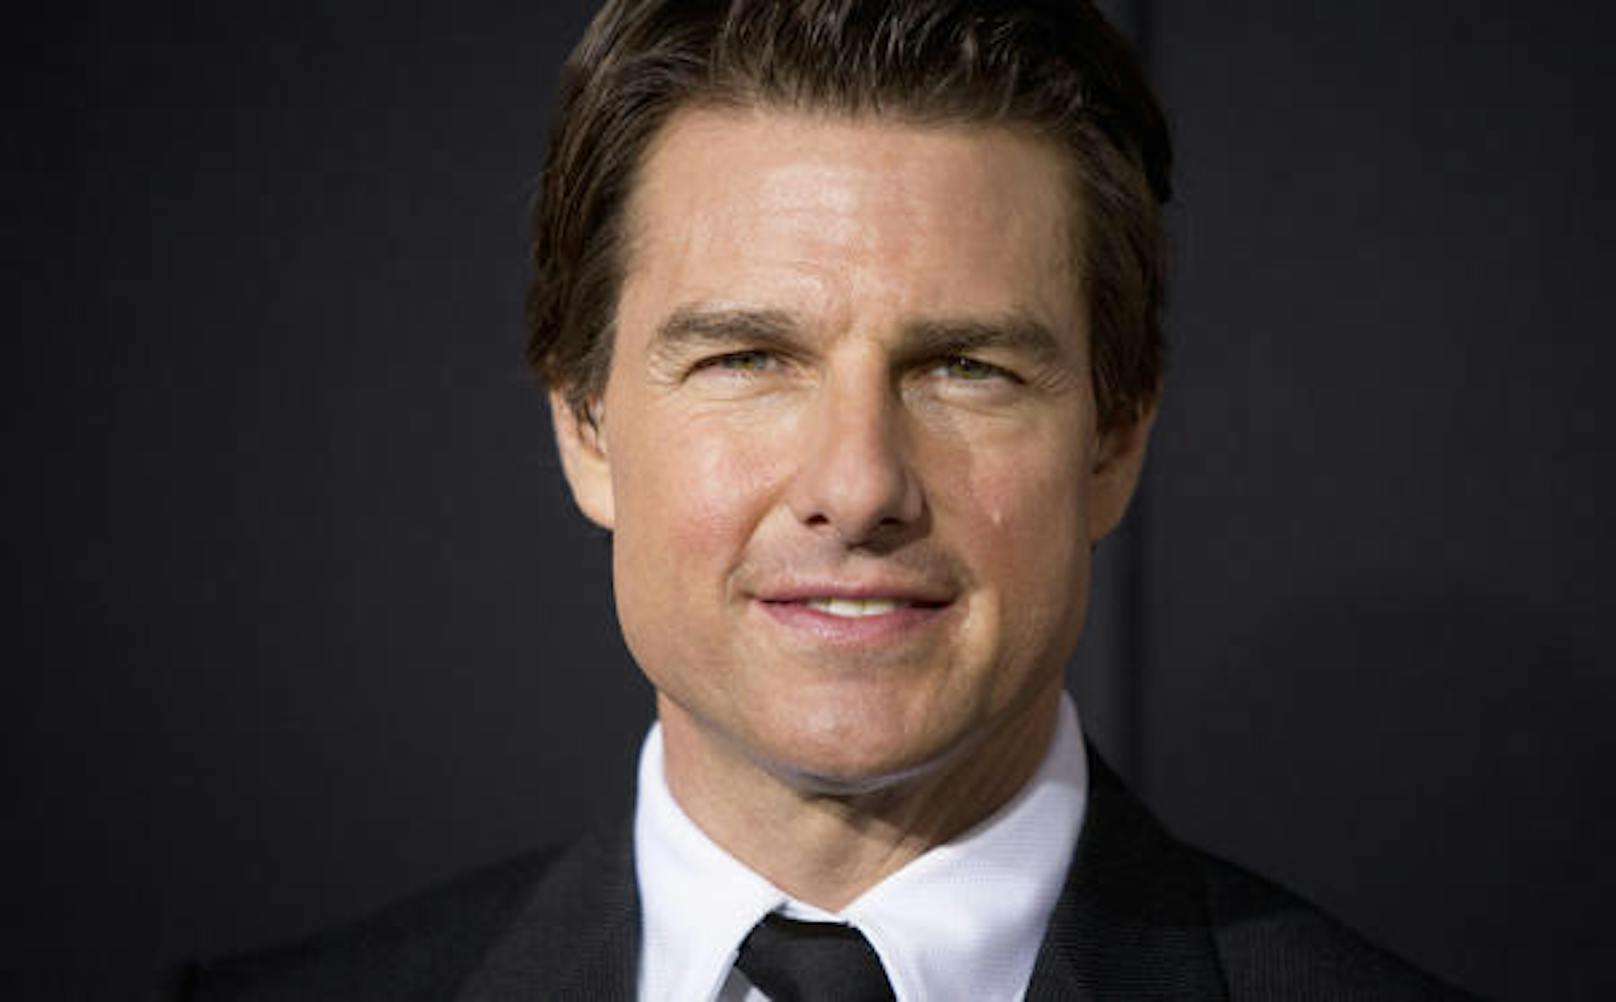 Und Superstar Tom Cruise hat soeben bekannt gegeben, er wolle für die Dreharbeiten auf der ISS den Regisseur Doug Liman ("Die Bourne Identität") an Bord verpflichten.